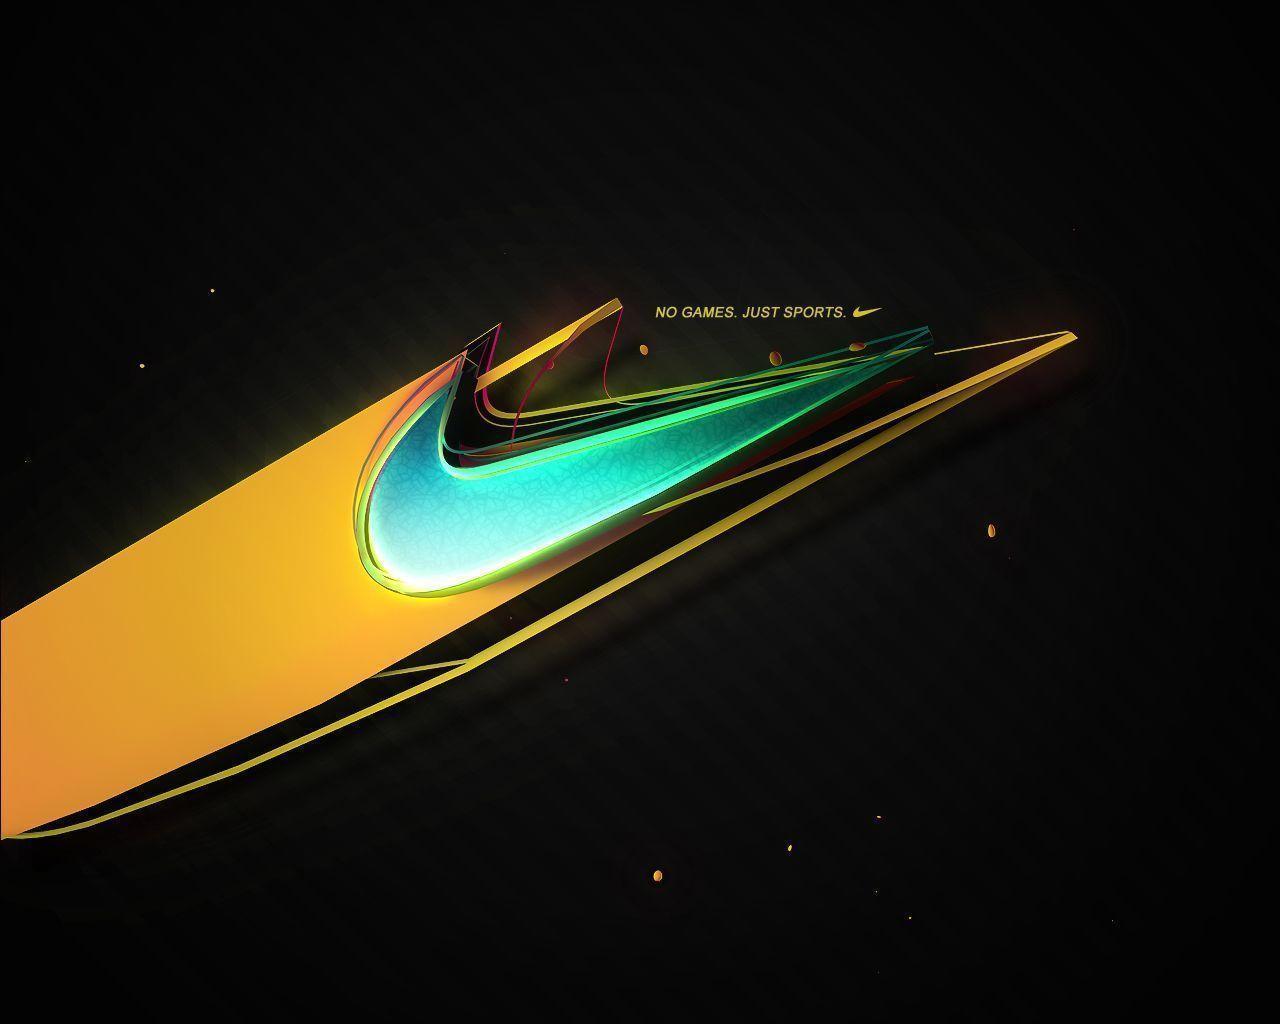 Nike Cool Logo 1061 1280x1024 px